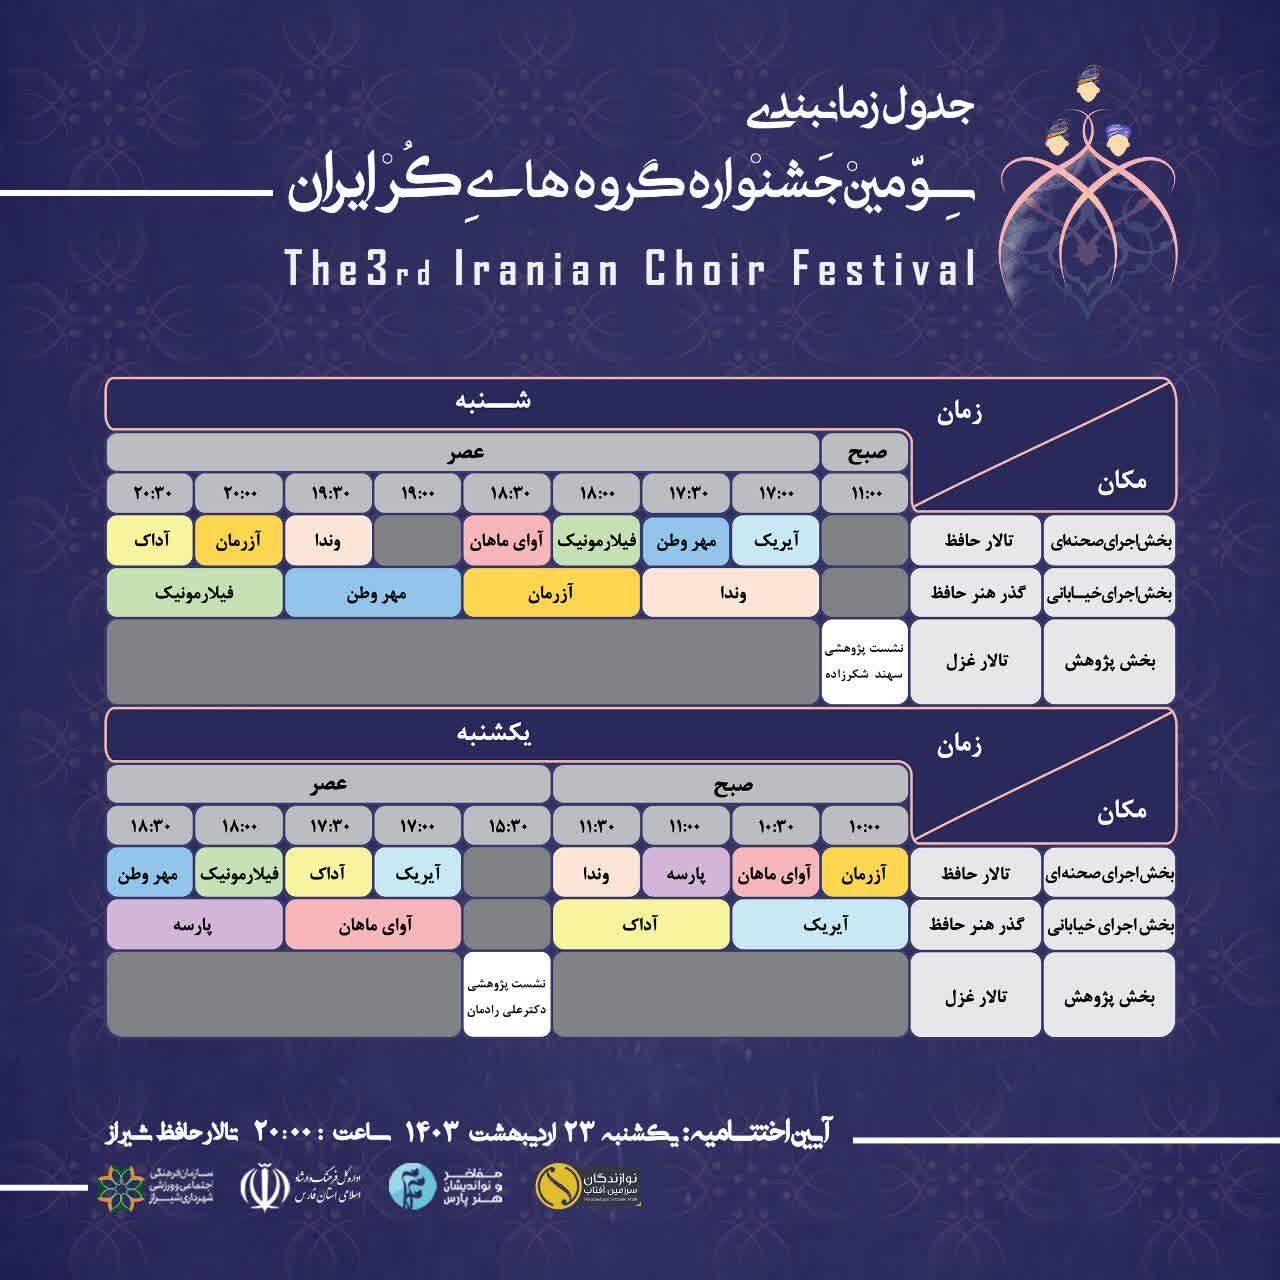 برگزاری سومین دوره جشنواره گروه های کر ایران به میزبانی شیراز